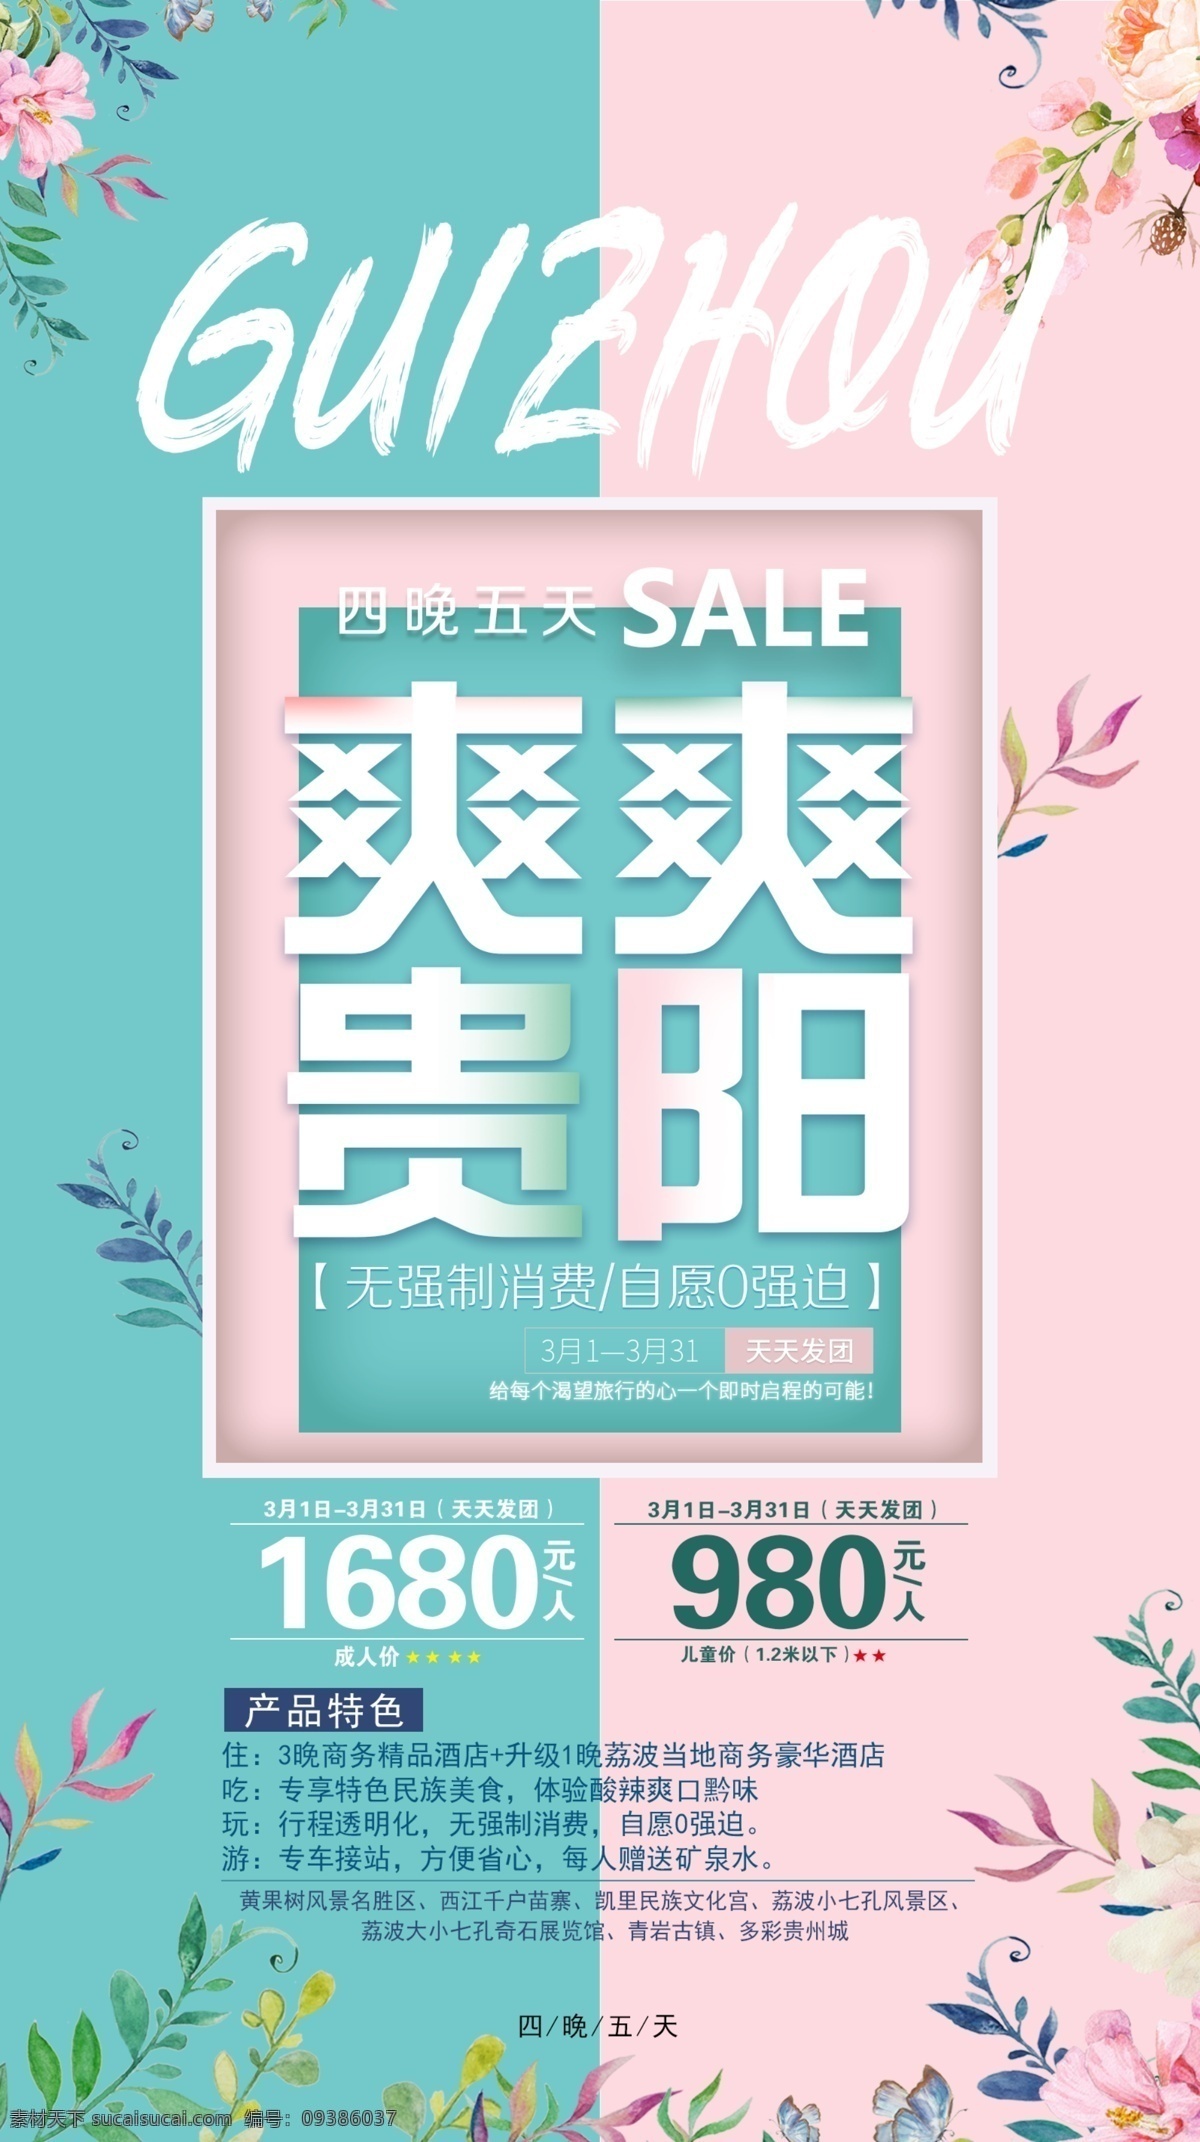 贵阳 贵州 简写 海报 宣传 广告 平面 高端 品质 行走 旅游